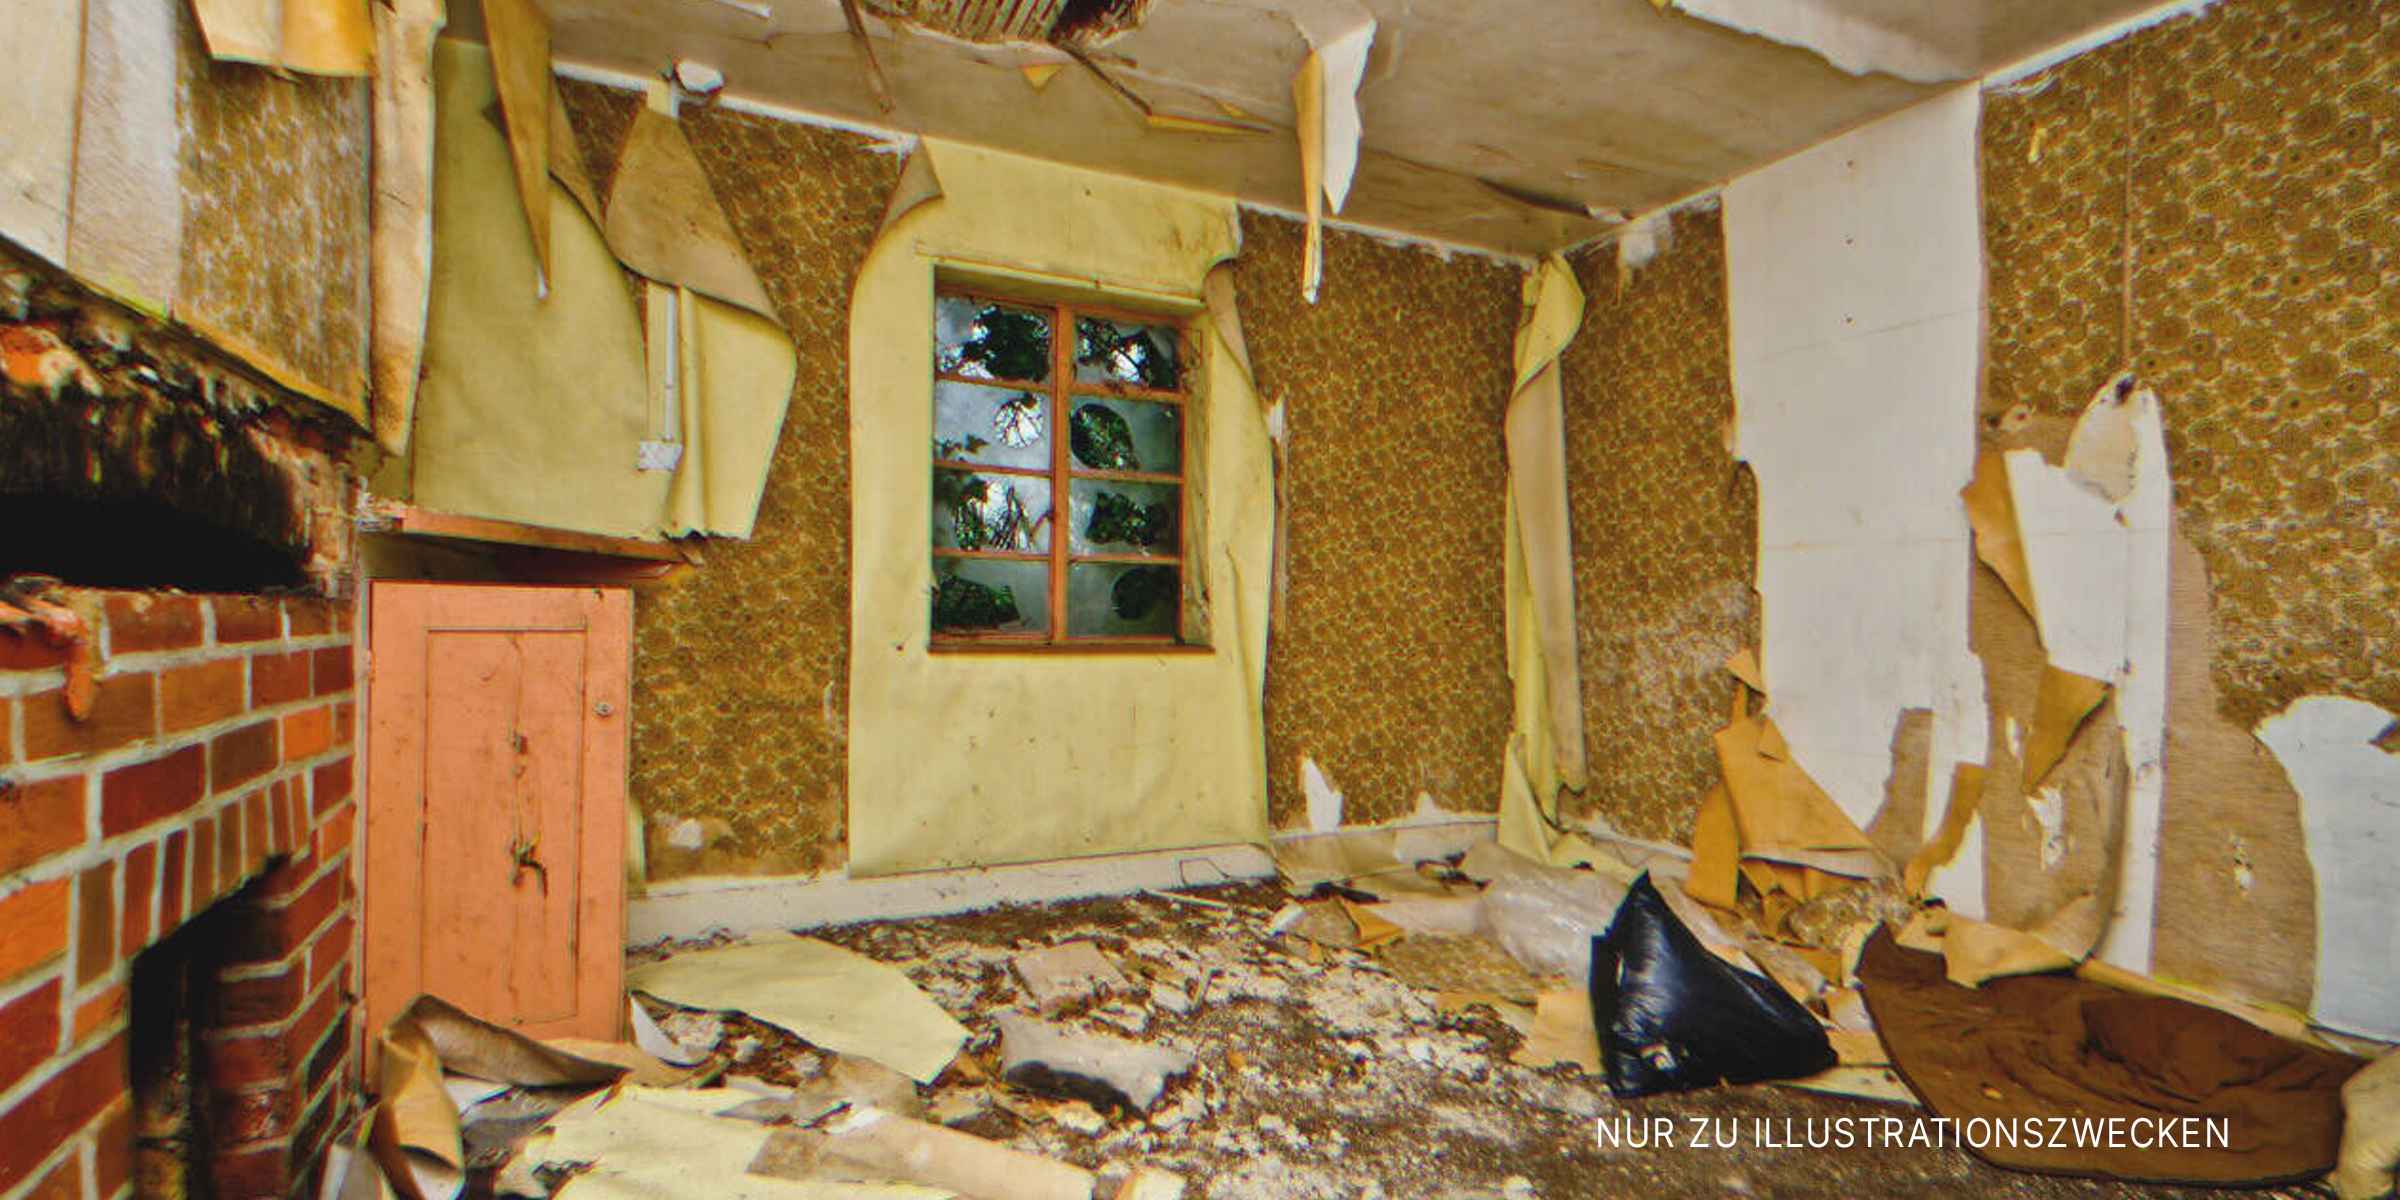 Das Innere eines vernachlässigten Hauses. | Quelle: Shutterstock